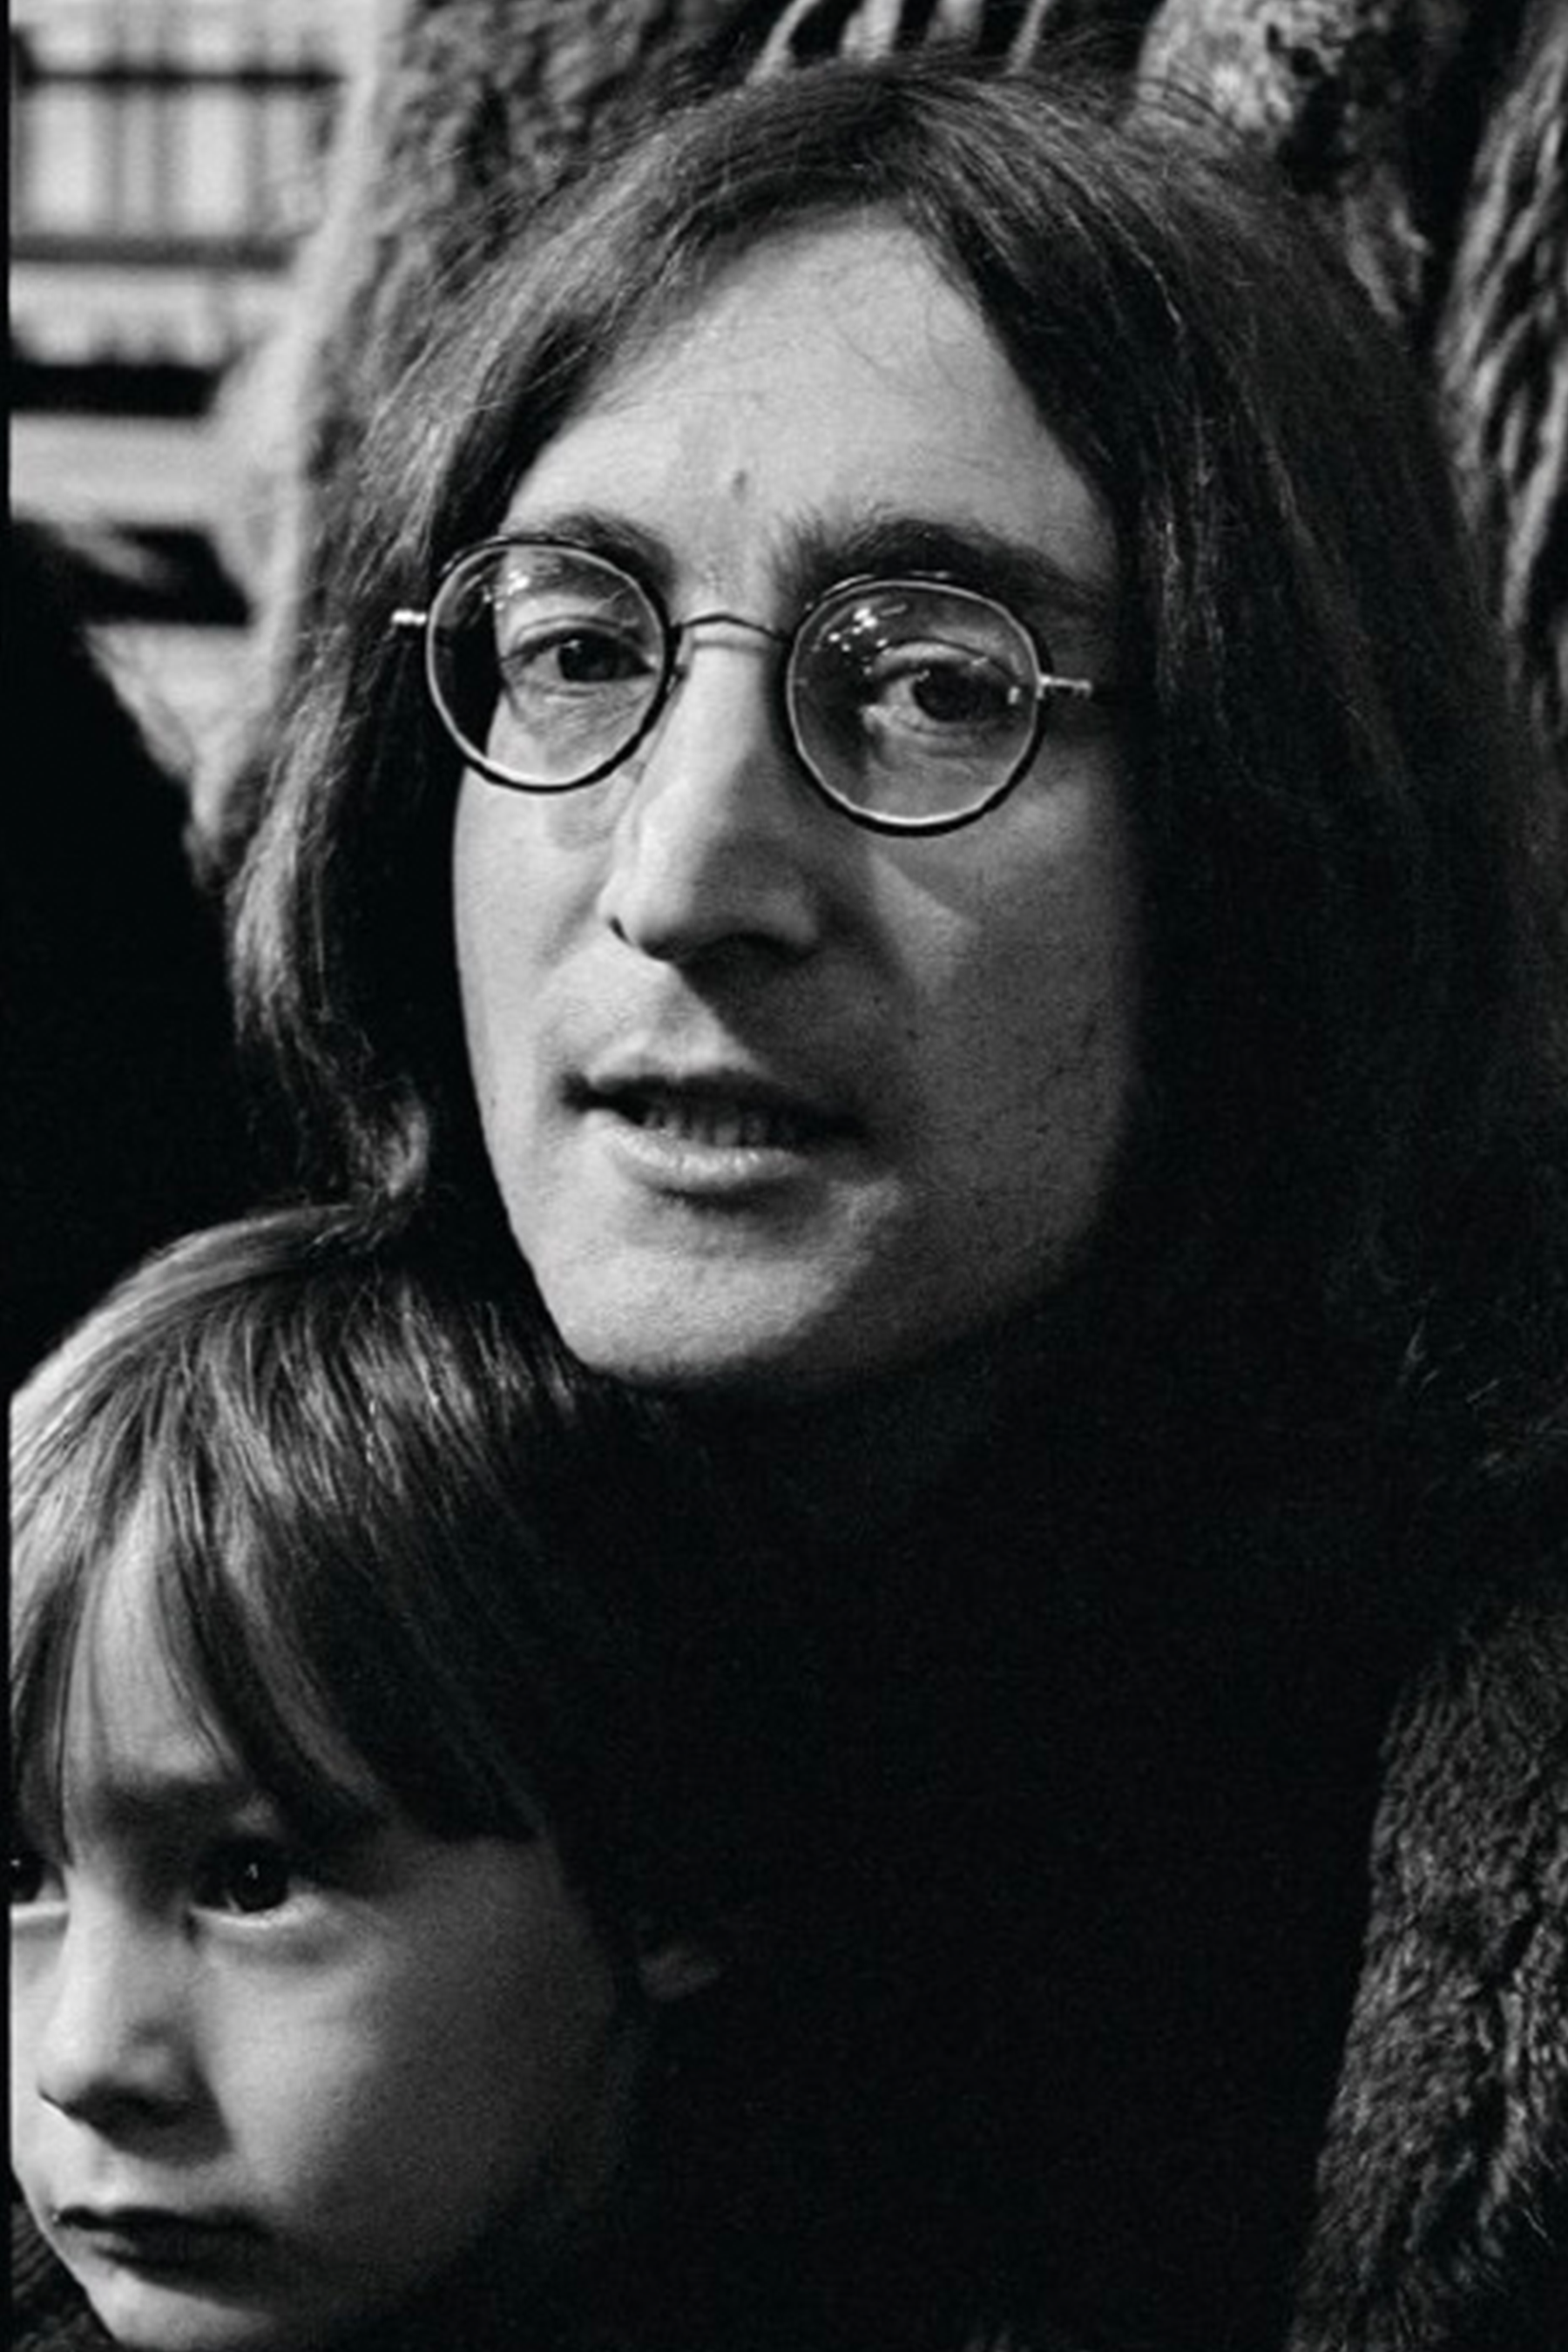 John Lennon wearing P3 eyeglasses